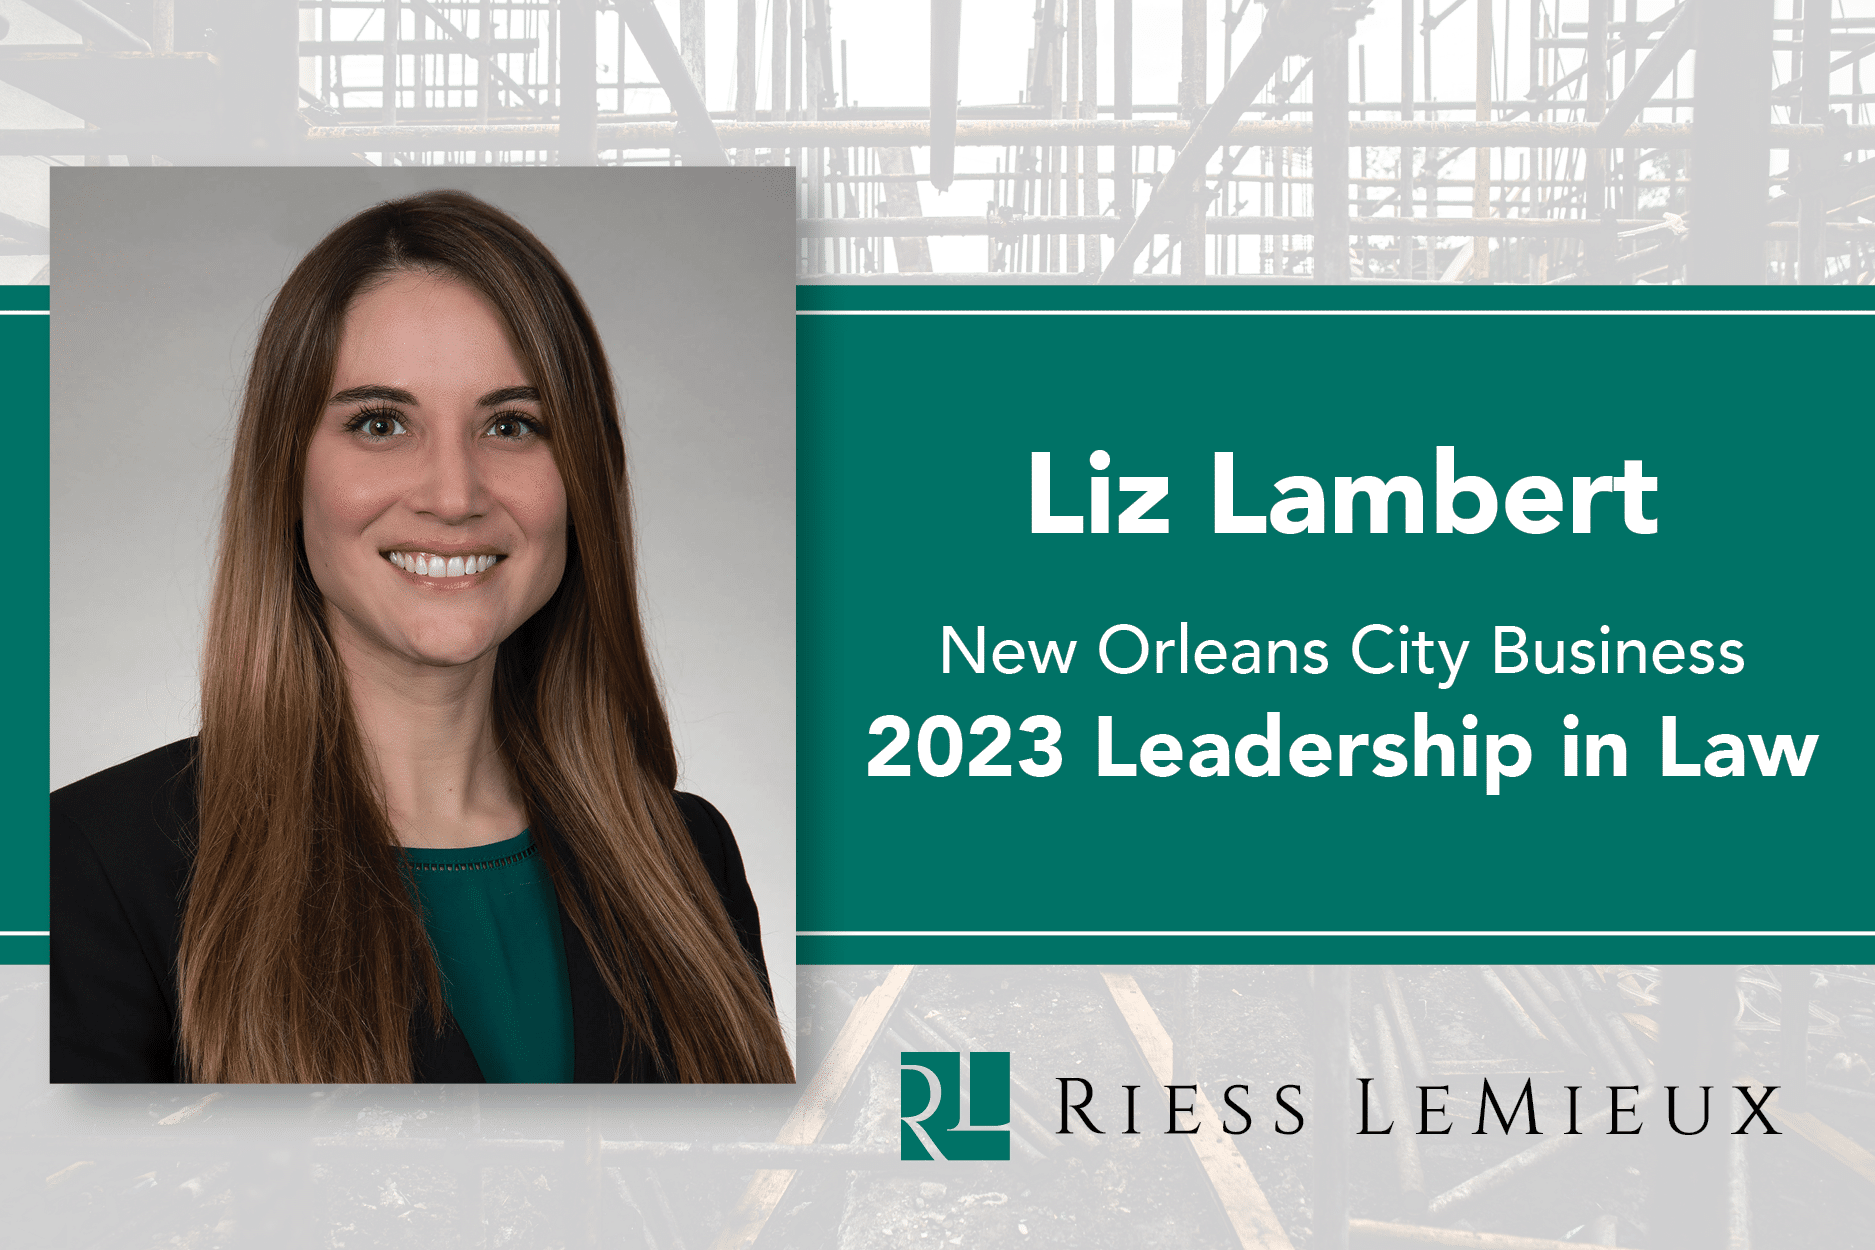 Liz Lambert Leadership in Law